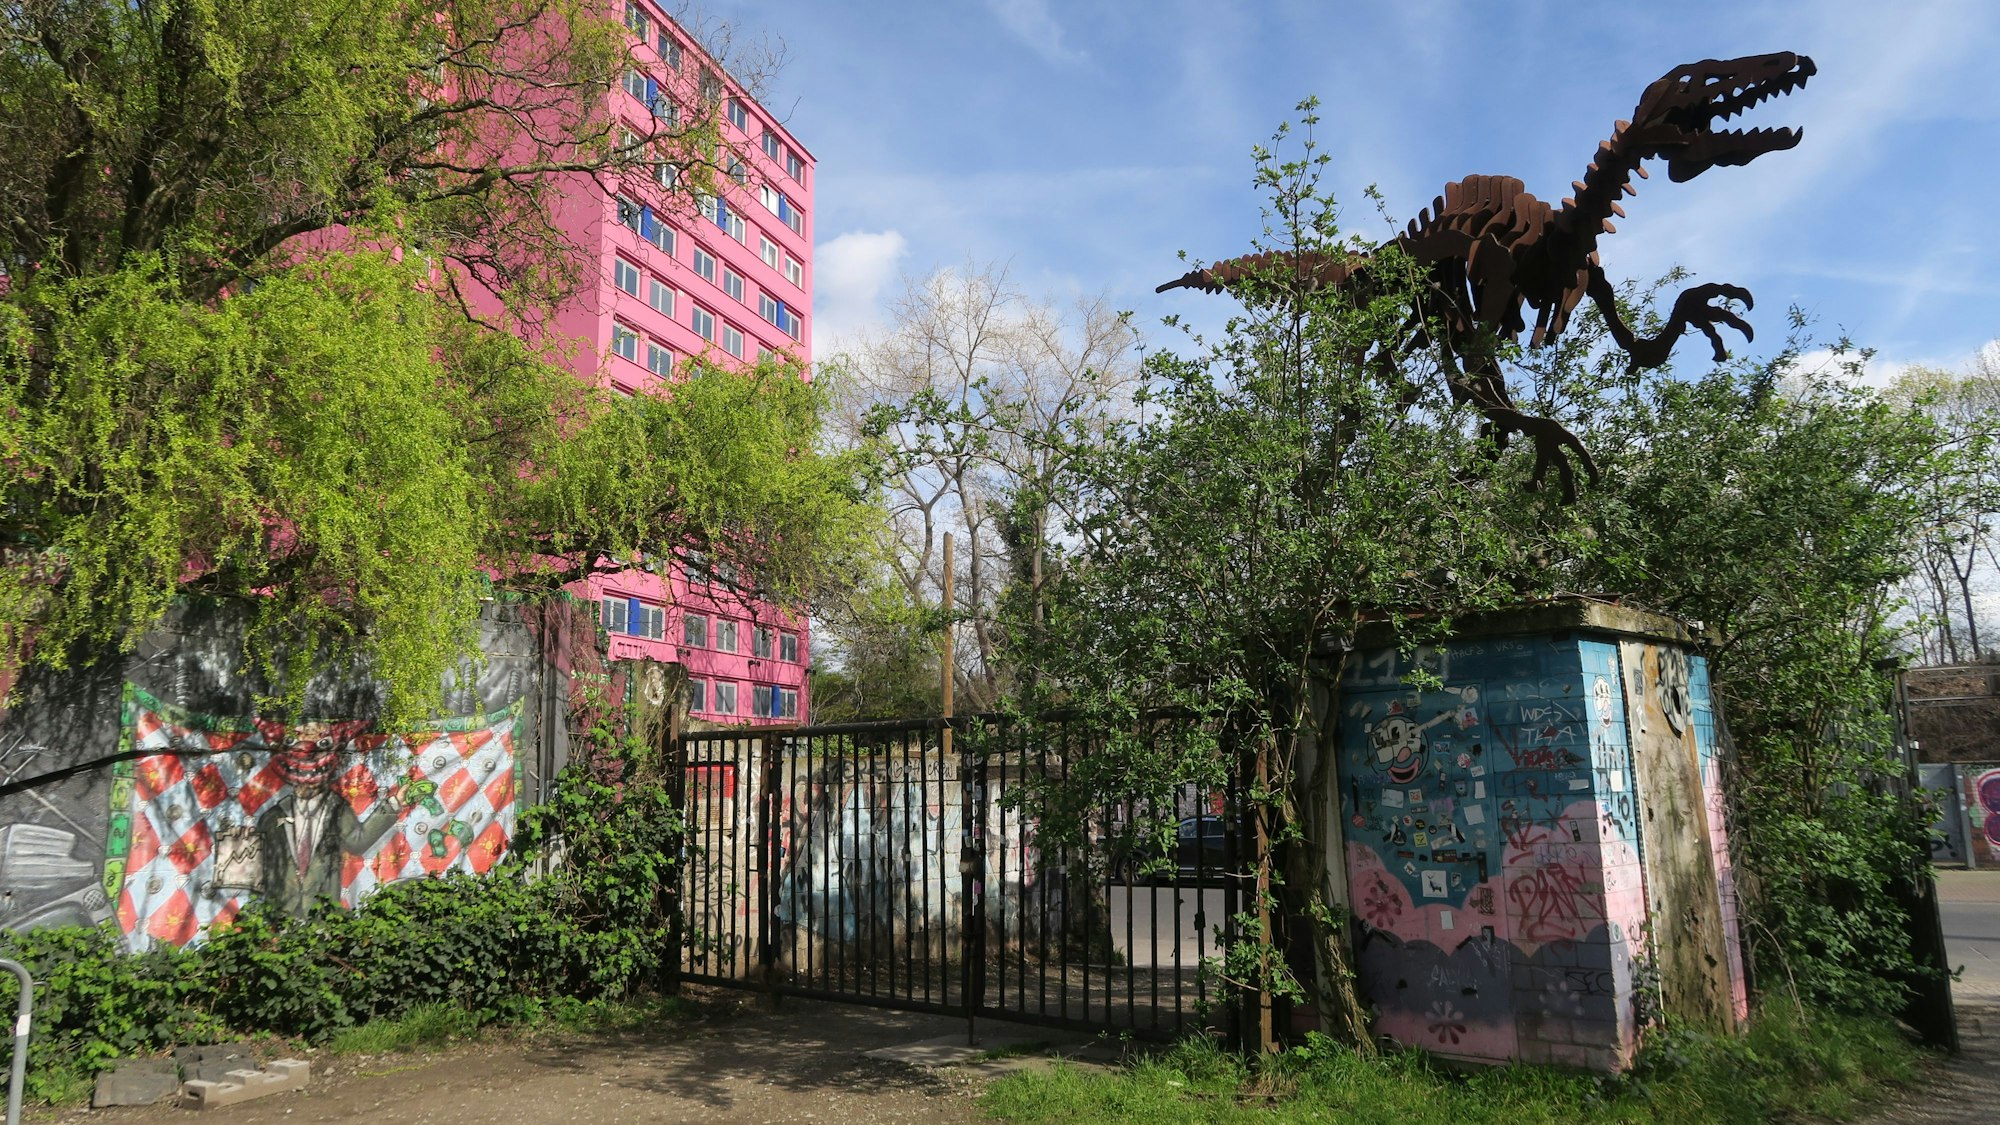 Das Odonien von außen, ein großer Dinosaurier aus Metall ragt über dem Eingang, im Hintergrund sieht man das Bordell „Pascha“